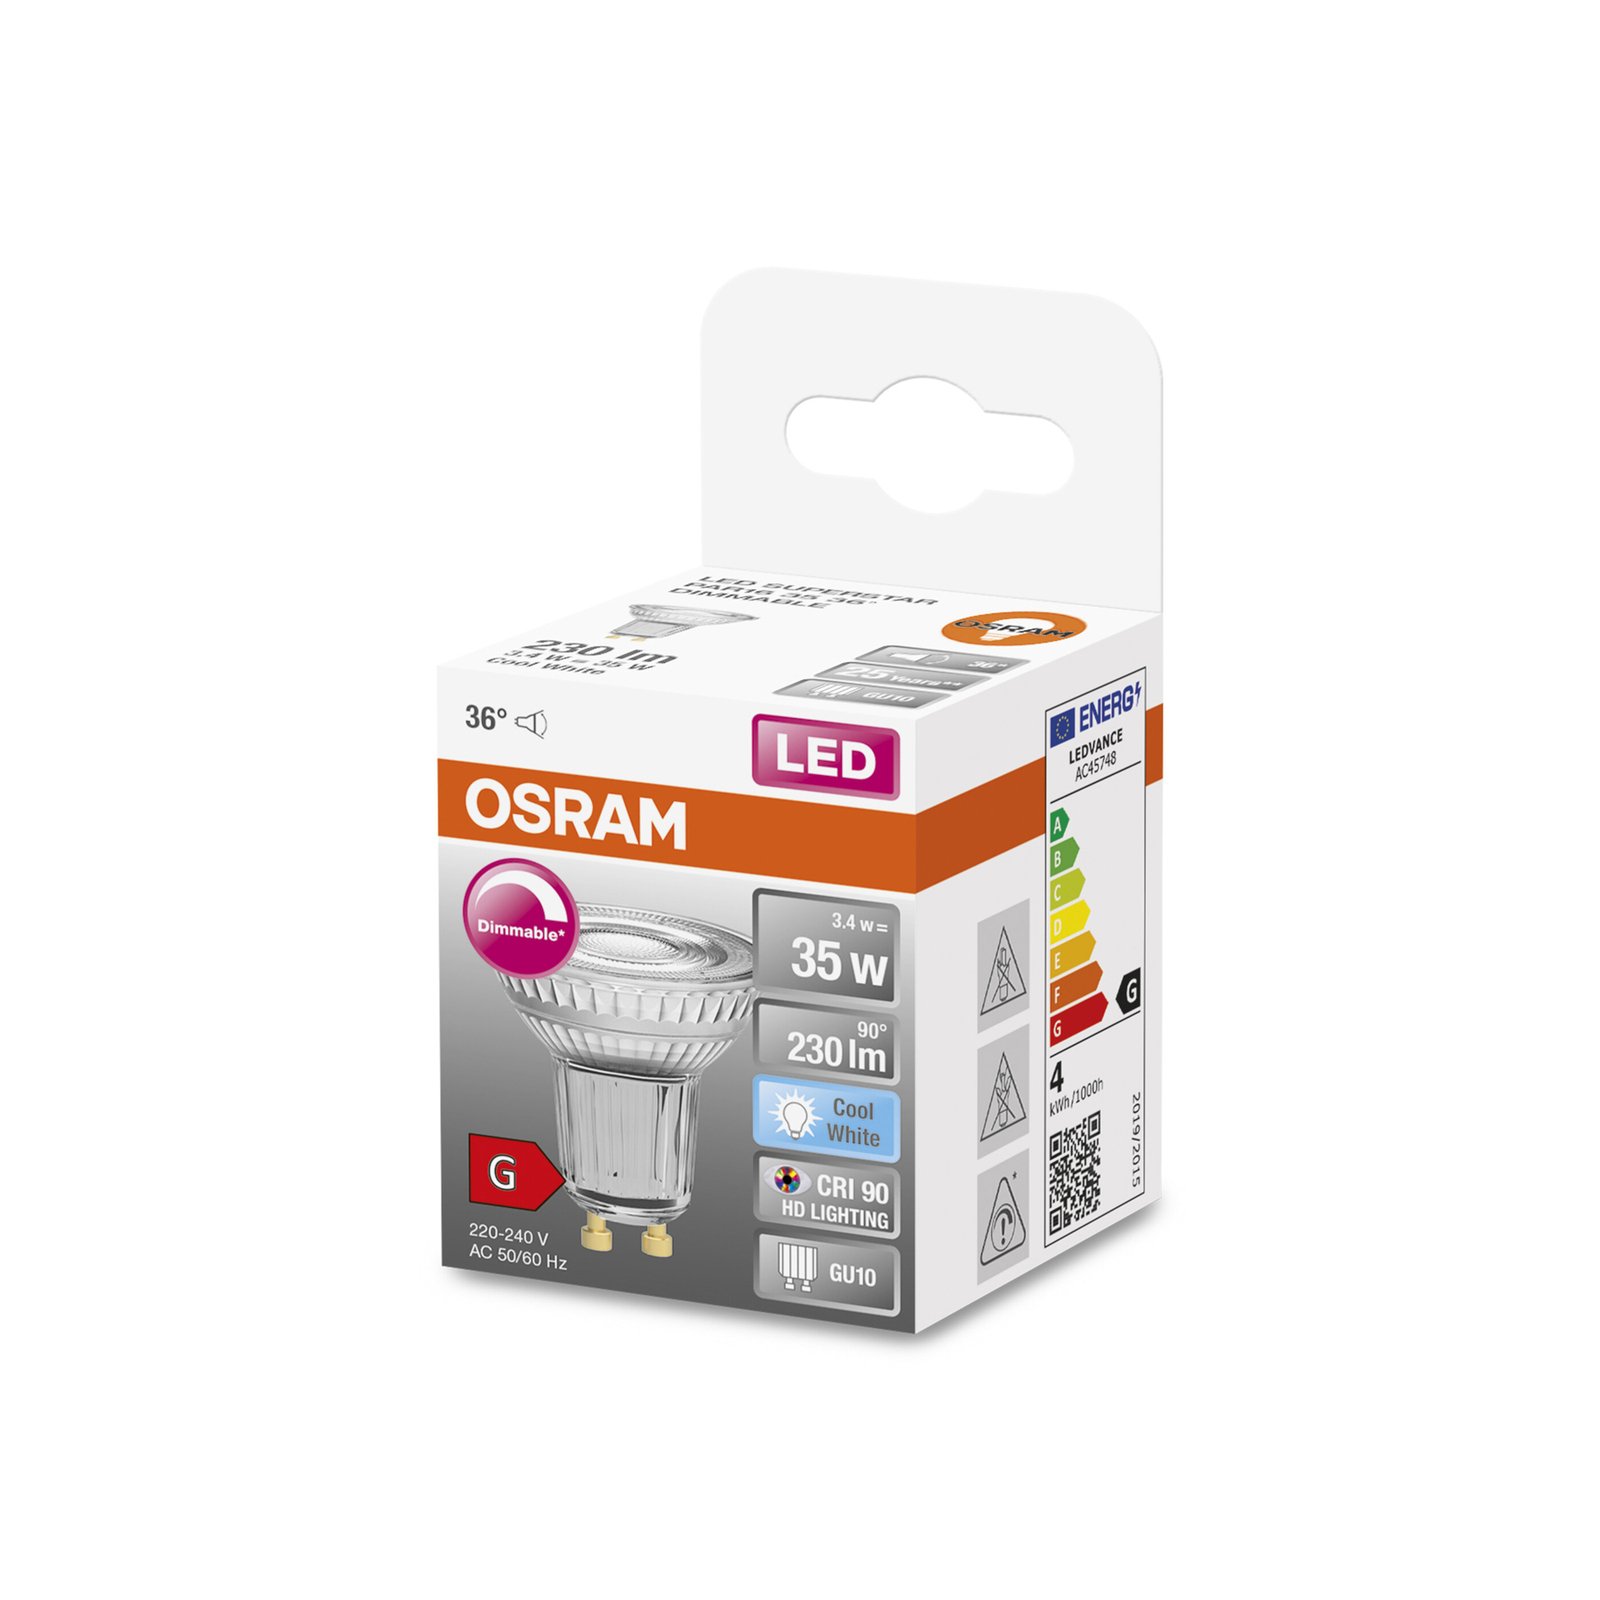 OSRAM reflector LED bulb GU10 3.4 W 940 230 lm dim